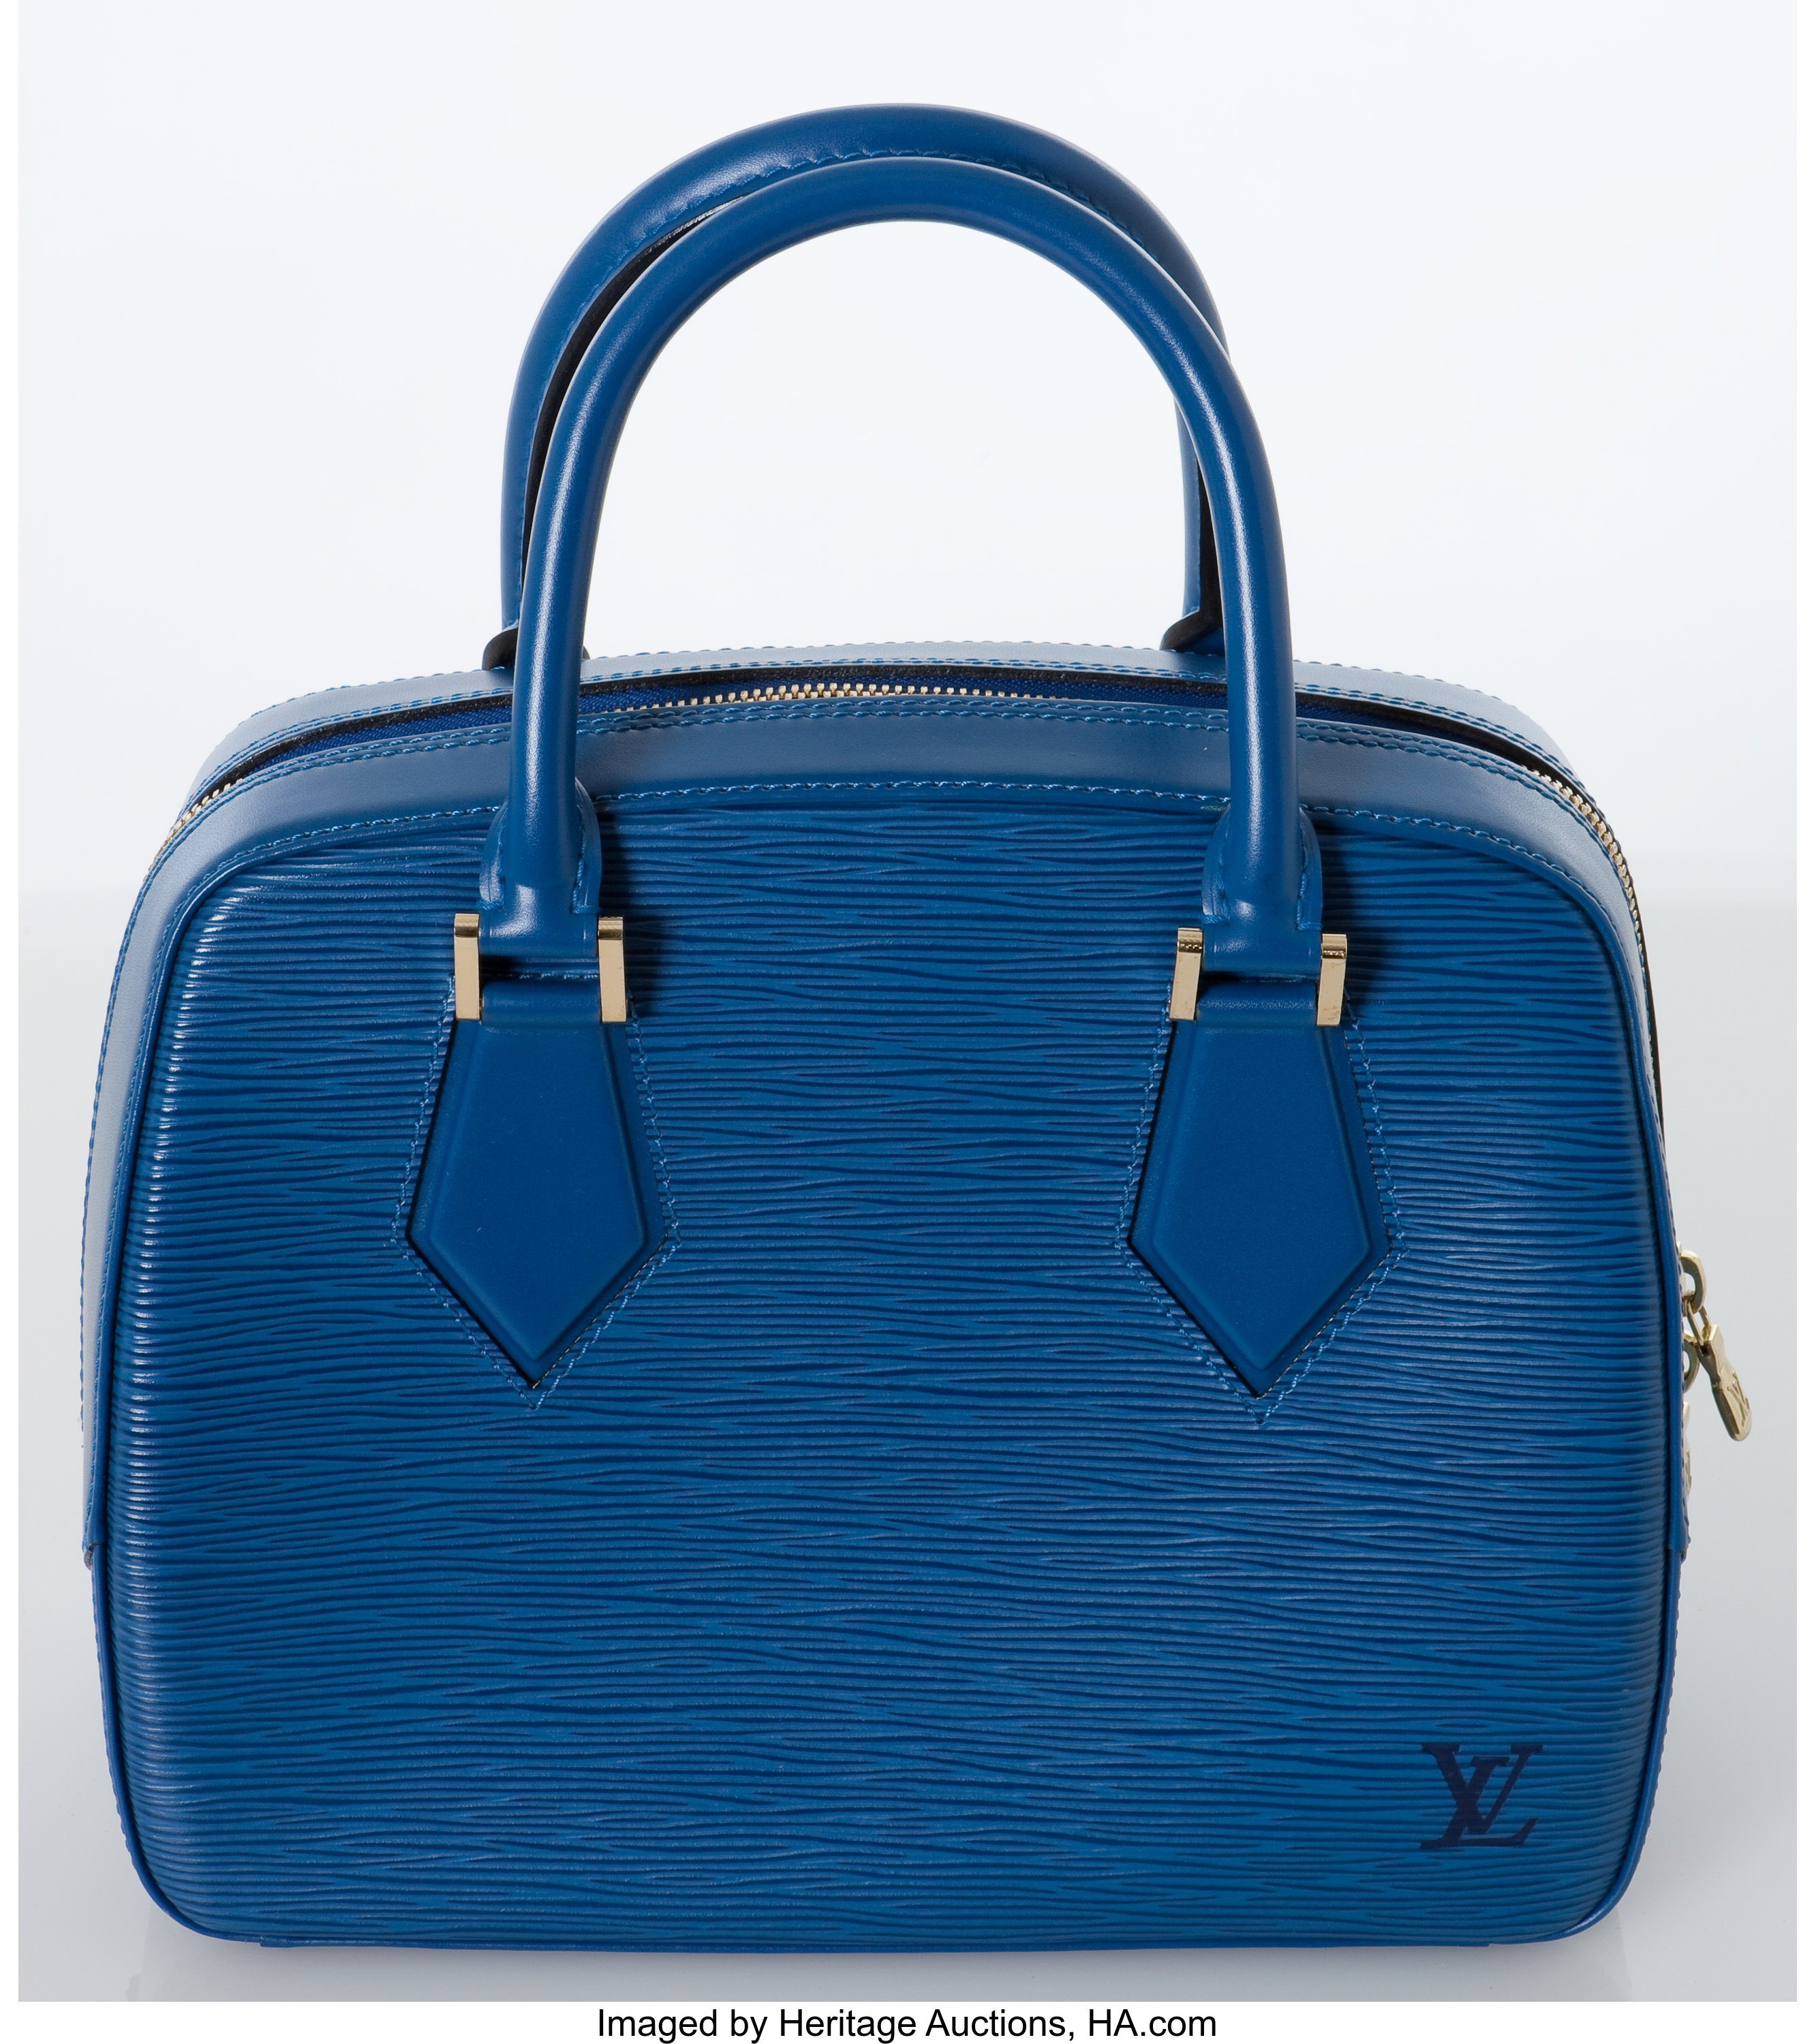 Vintage Louis Vuitton blue epi envelope style clutch bag with gold tone LV  motif